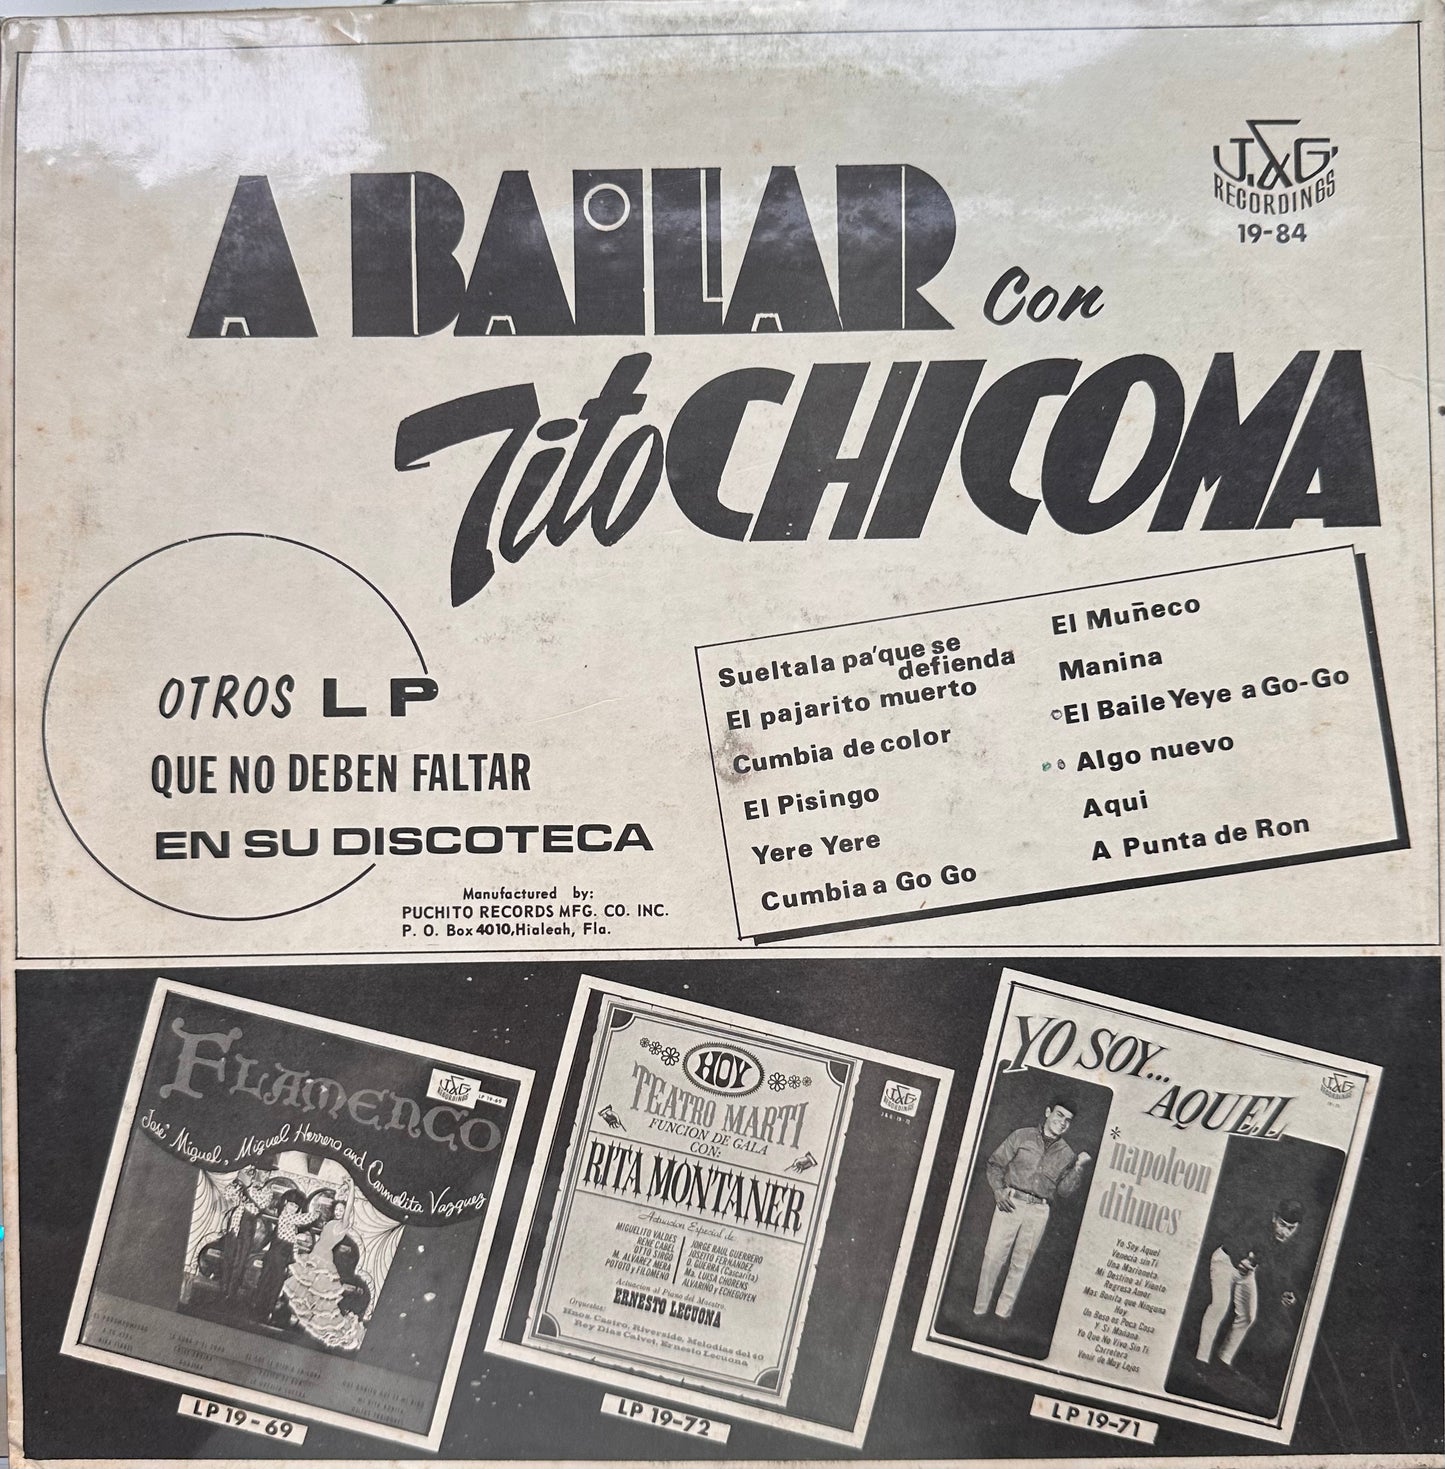 A Bailar con Chicoma - Tito Chicoma